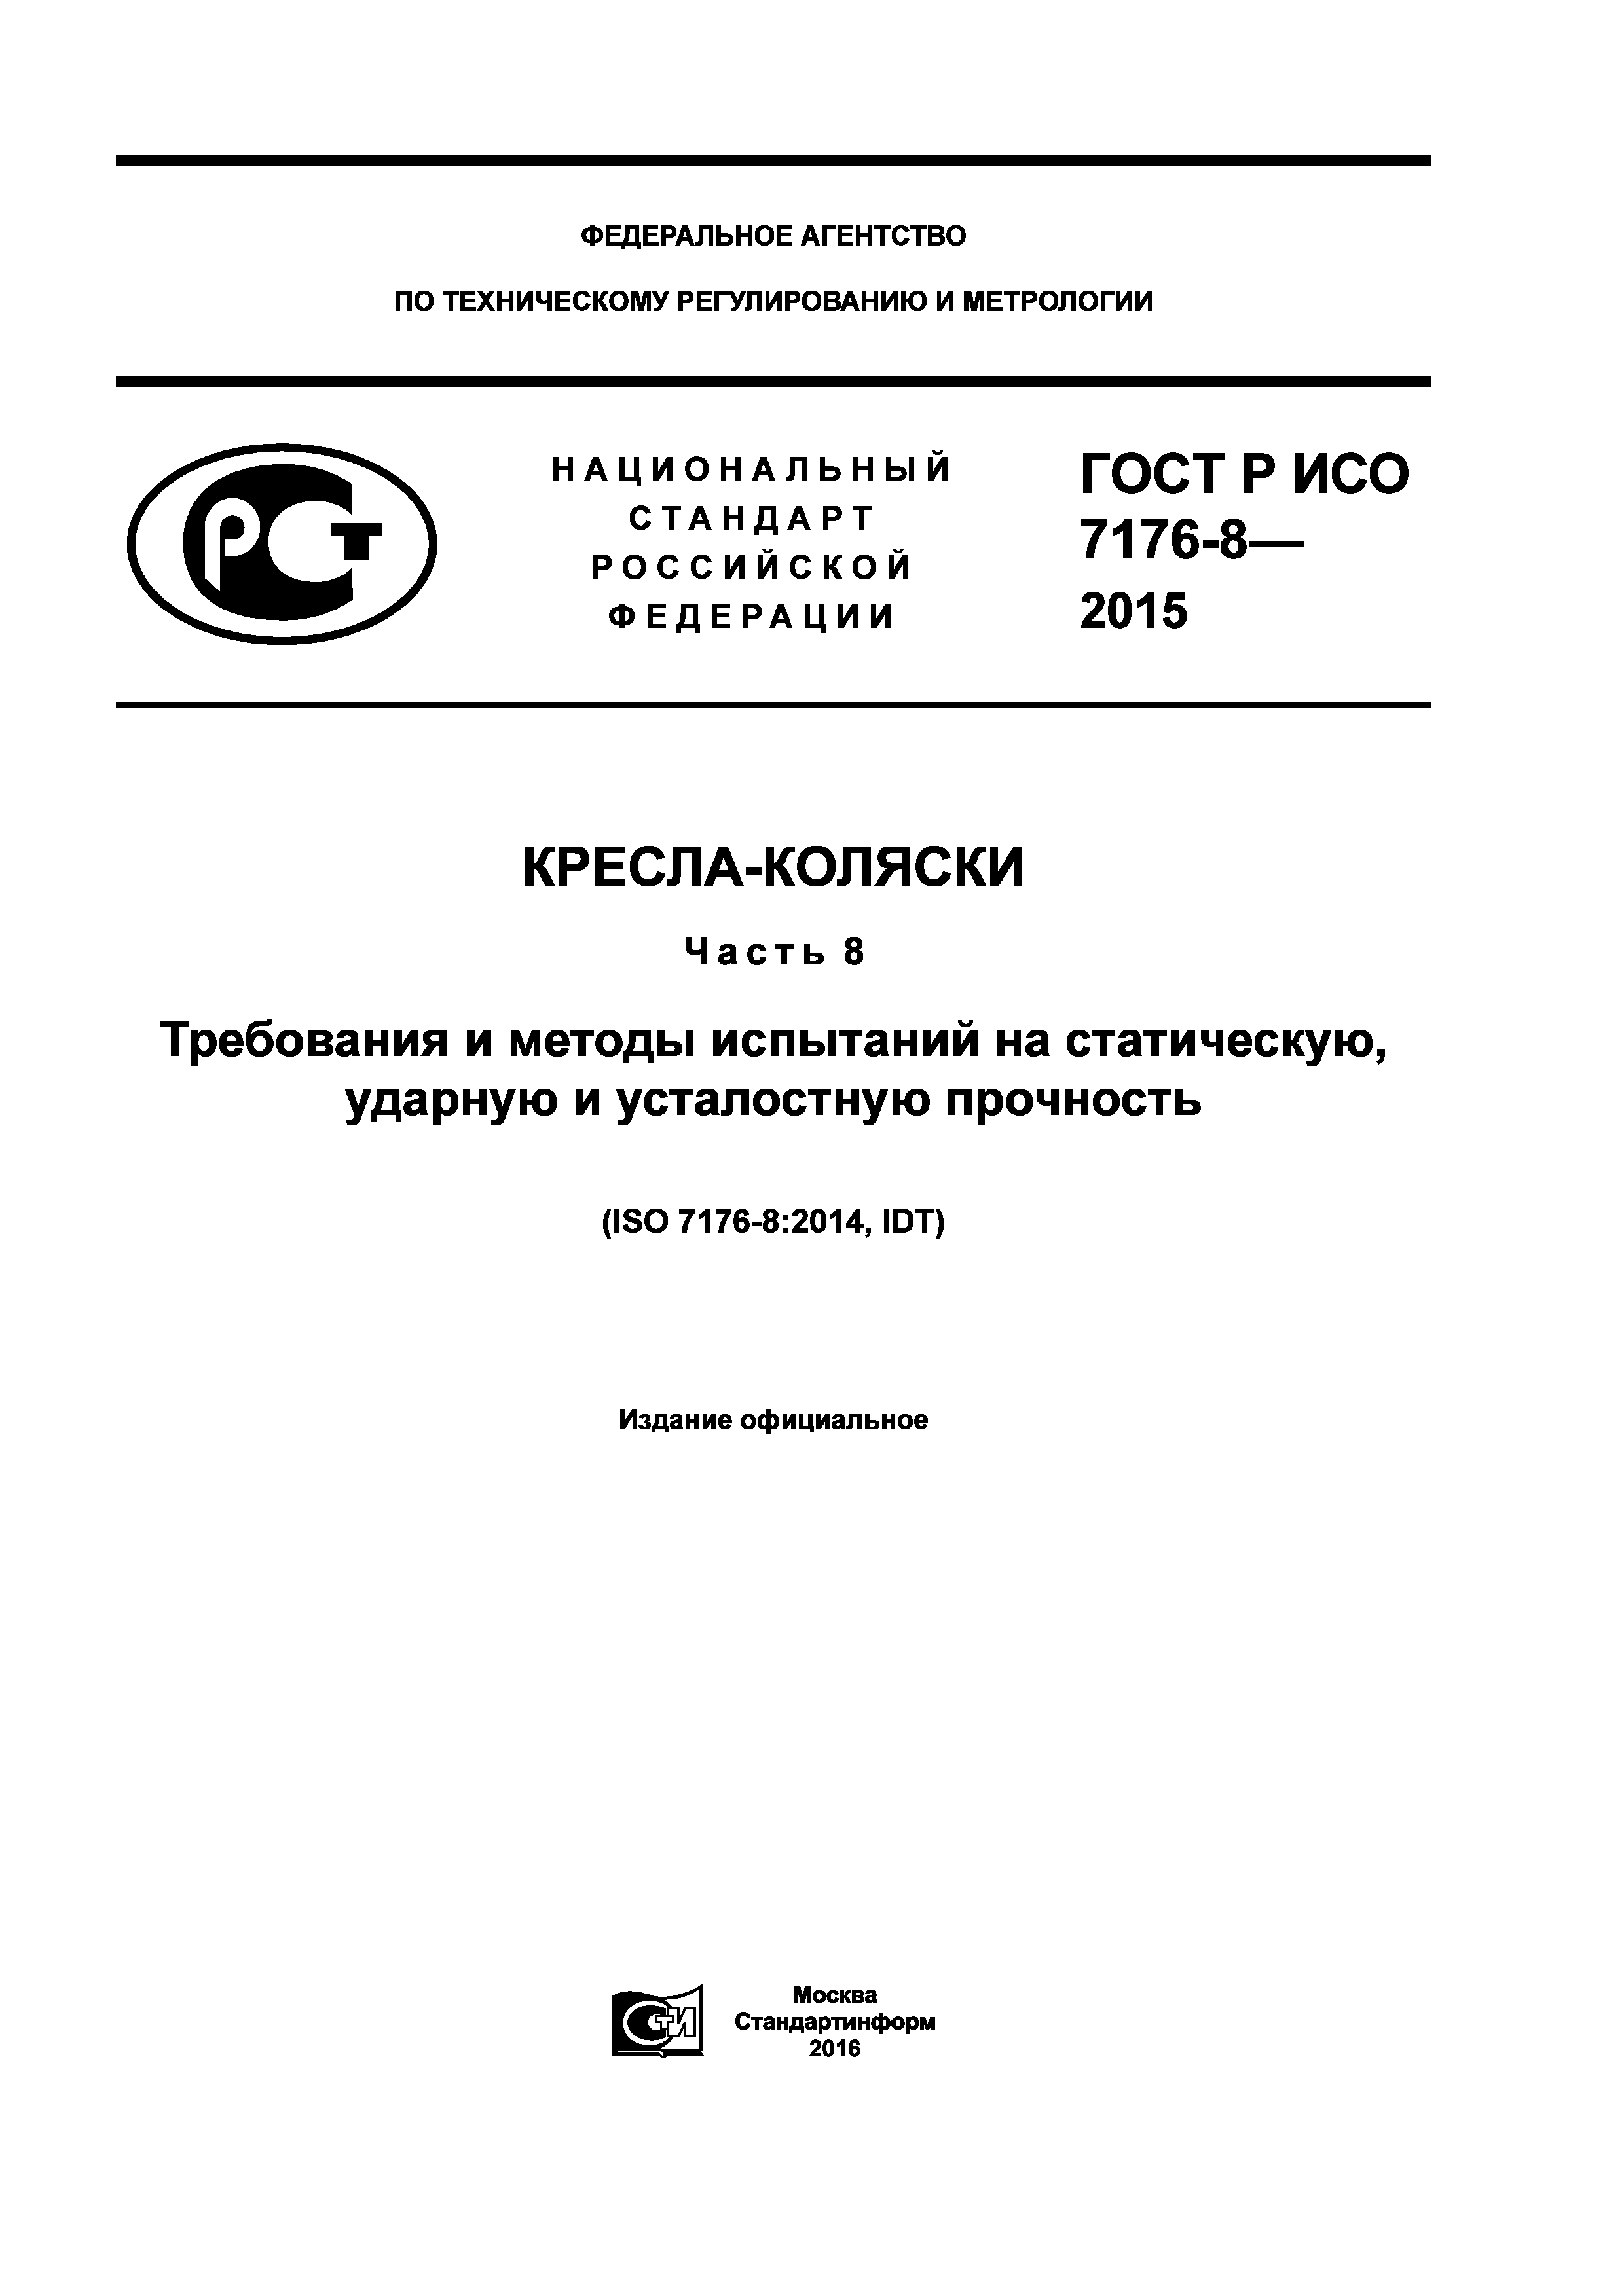 ГОСТ Р ИСО 7176-8-2015